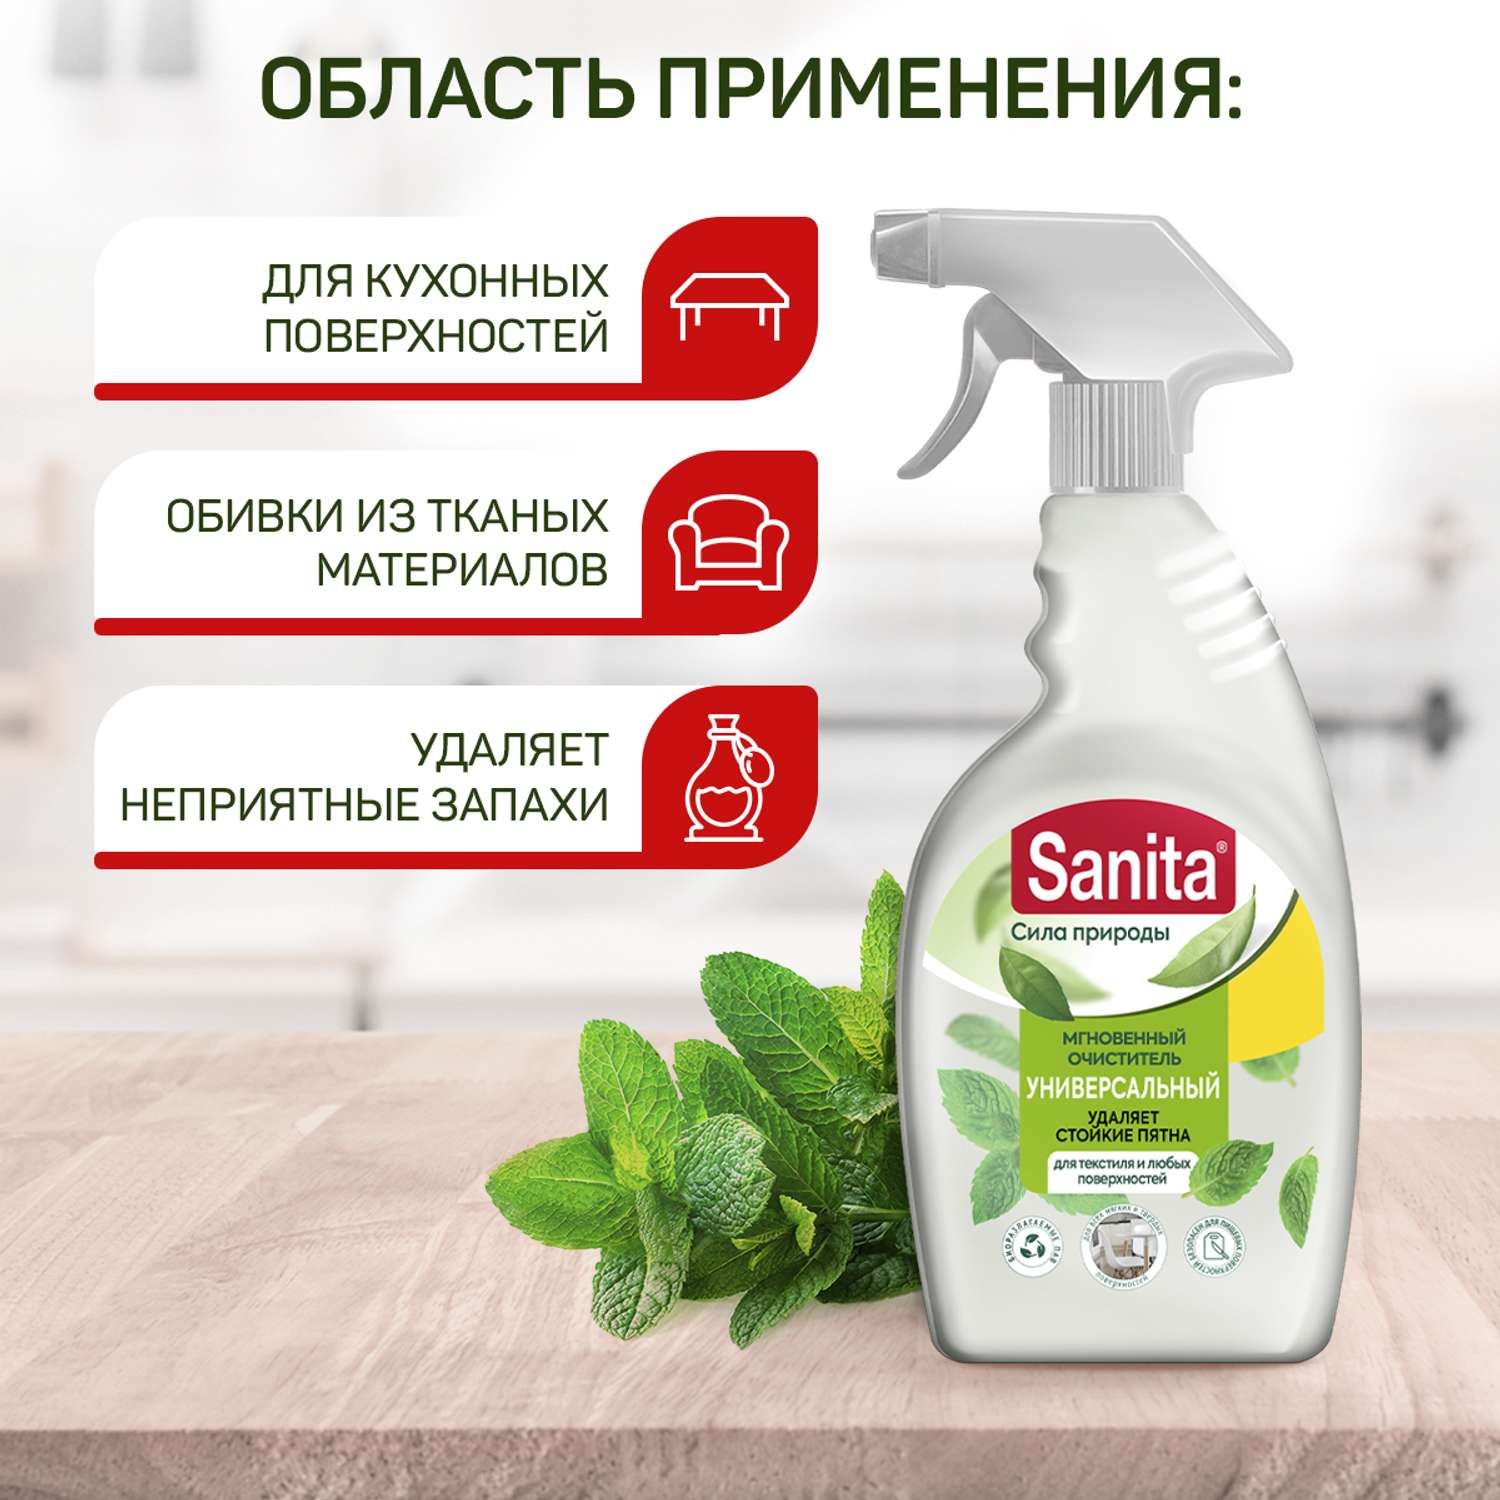 Набор бытовой химии Sanita для уборки дома 4 штуки - фото 6